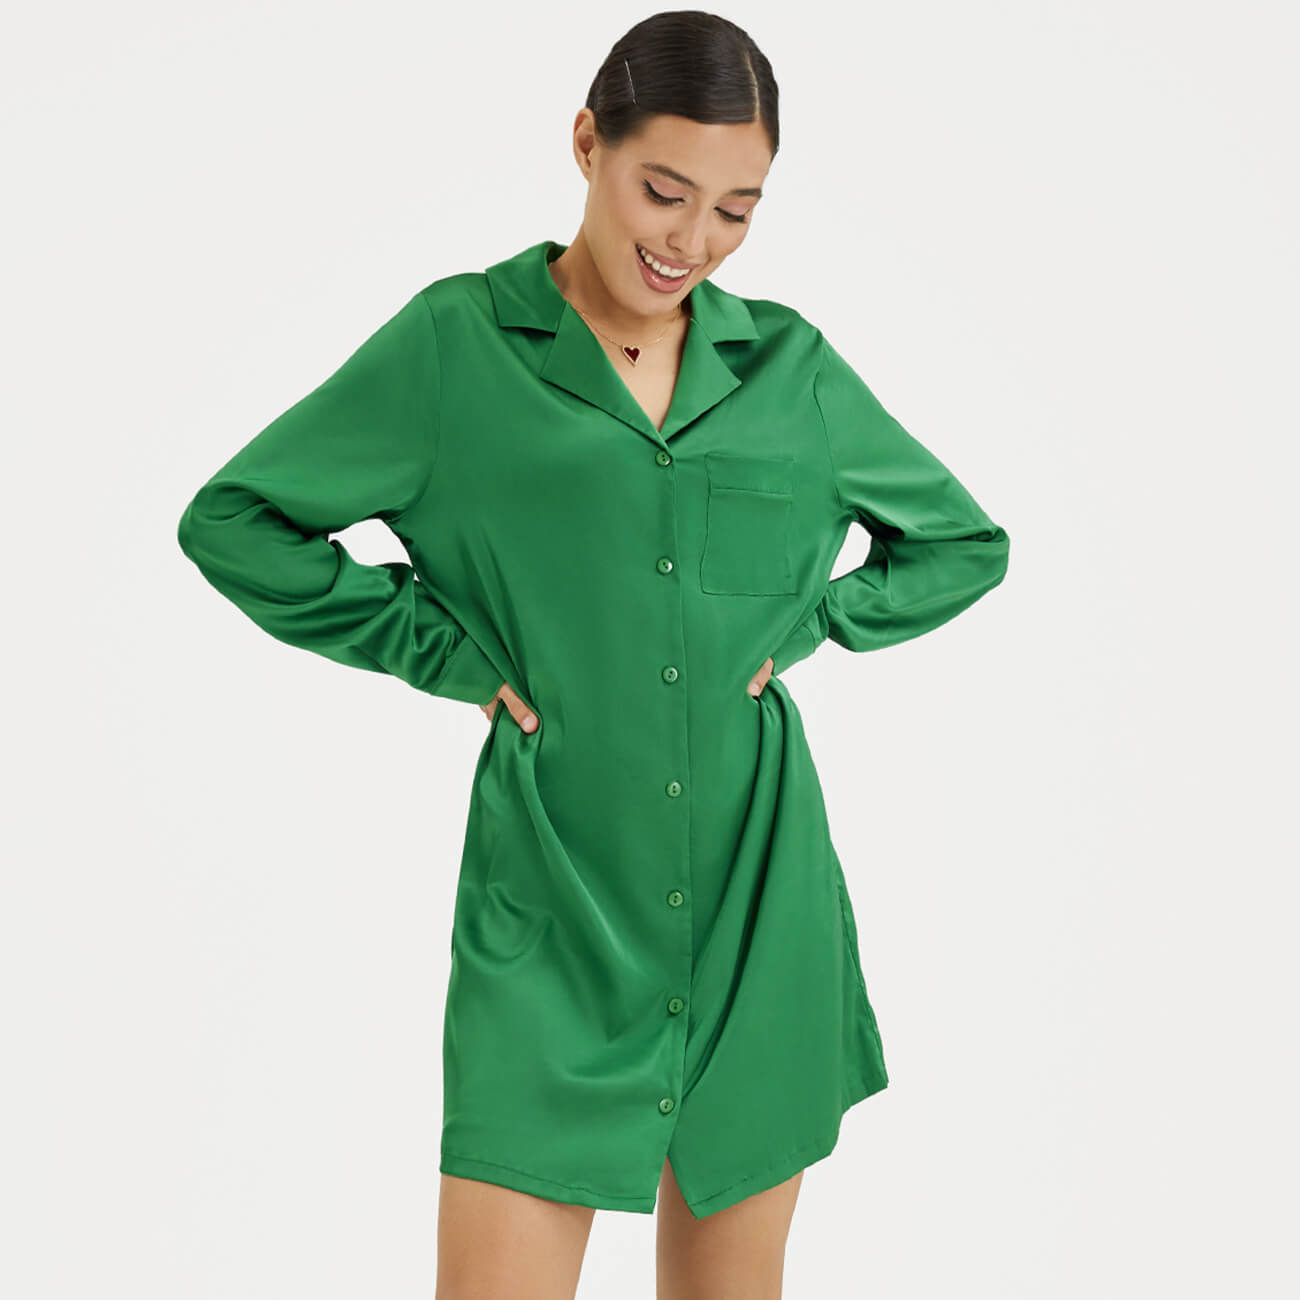 Рубашка женская, р. XL, удлиненная, с длинным рукавом, полиэстер/эластан, зеленая, Madeline